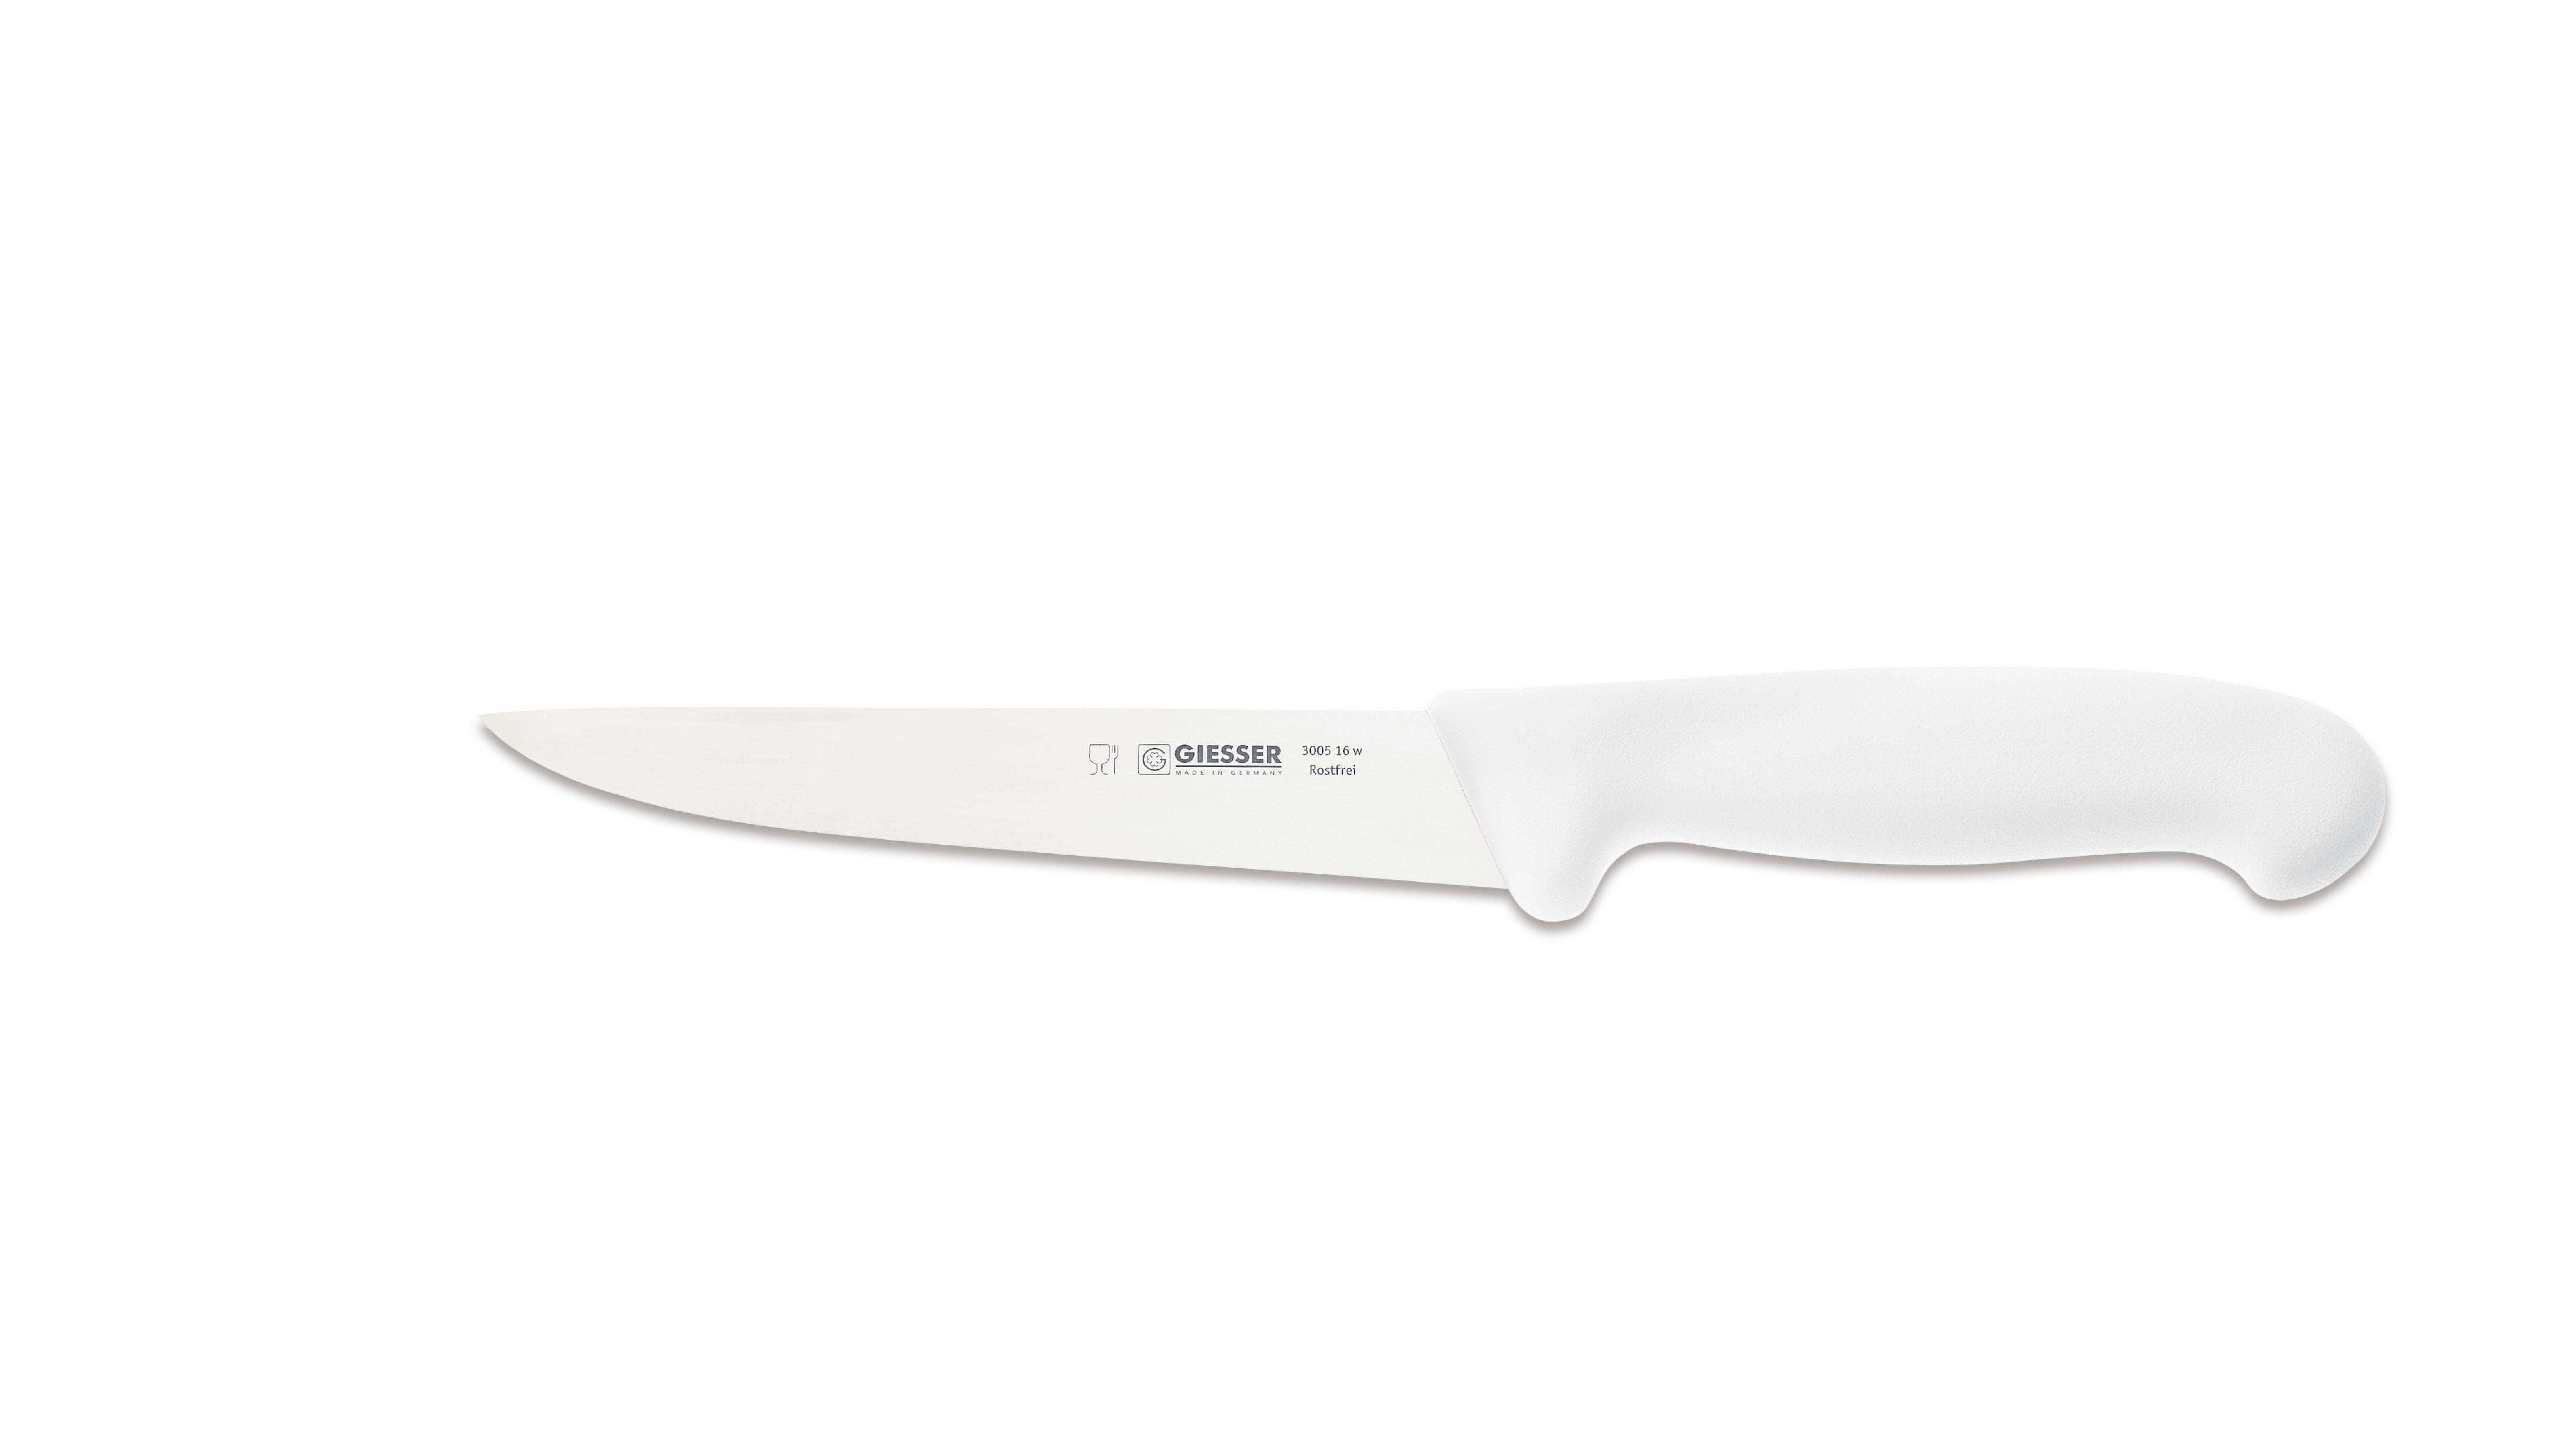 Giesser Messer Ausbeinmesser Stechmesser 3005 13-30, starke, gerade Klinge, Ideal für Fleischer Weiß